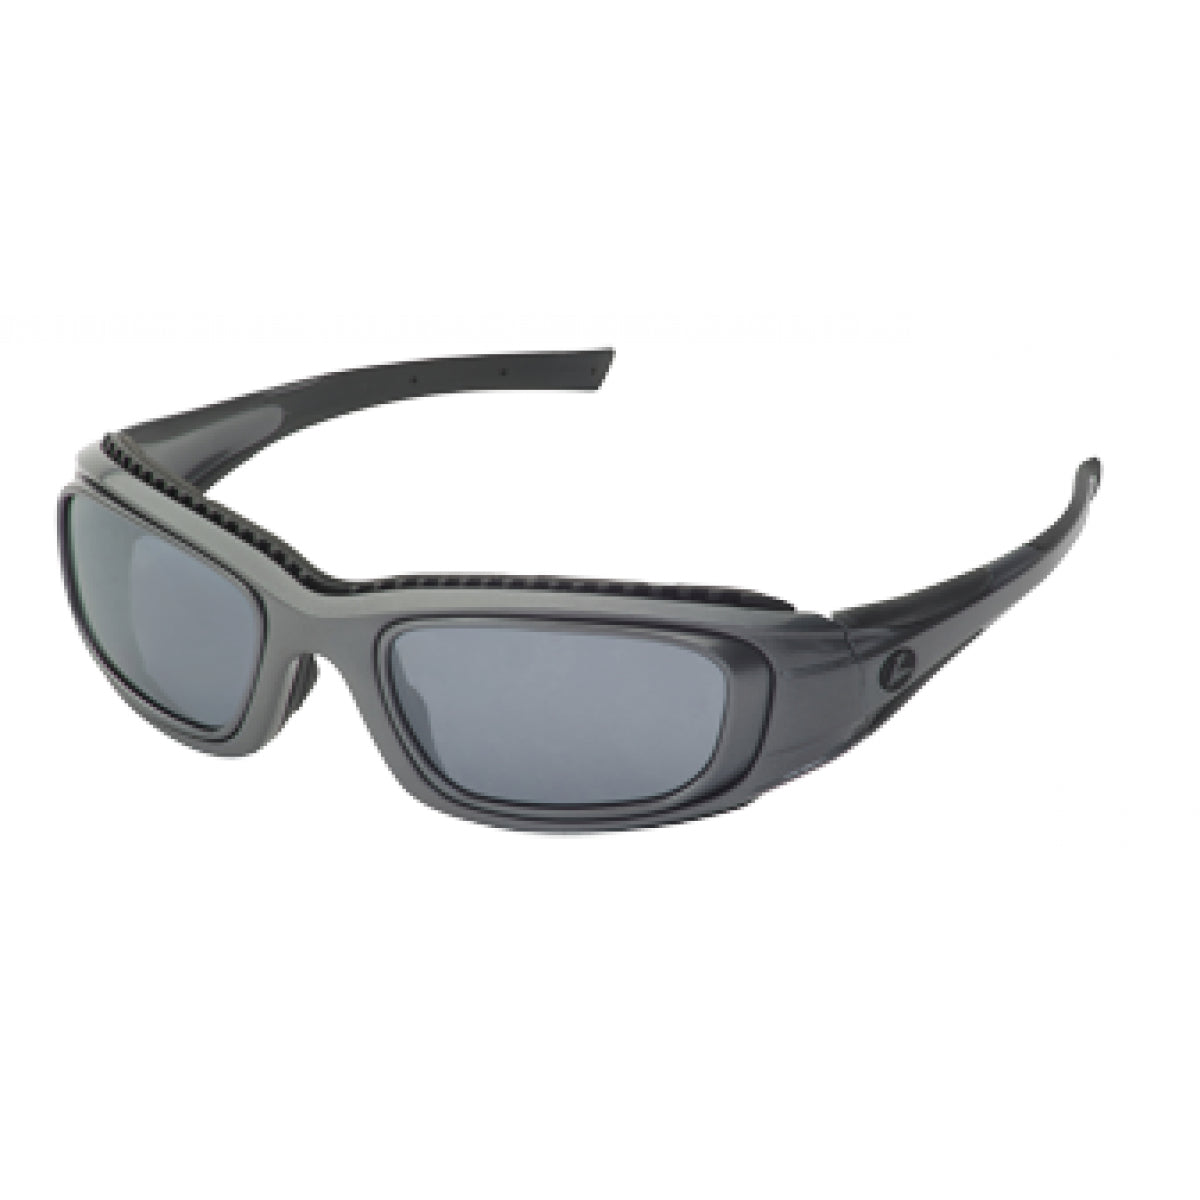 Hilco Leader RX Sunglasses Cruiser - Go-Readers.com